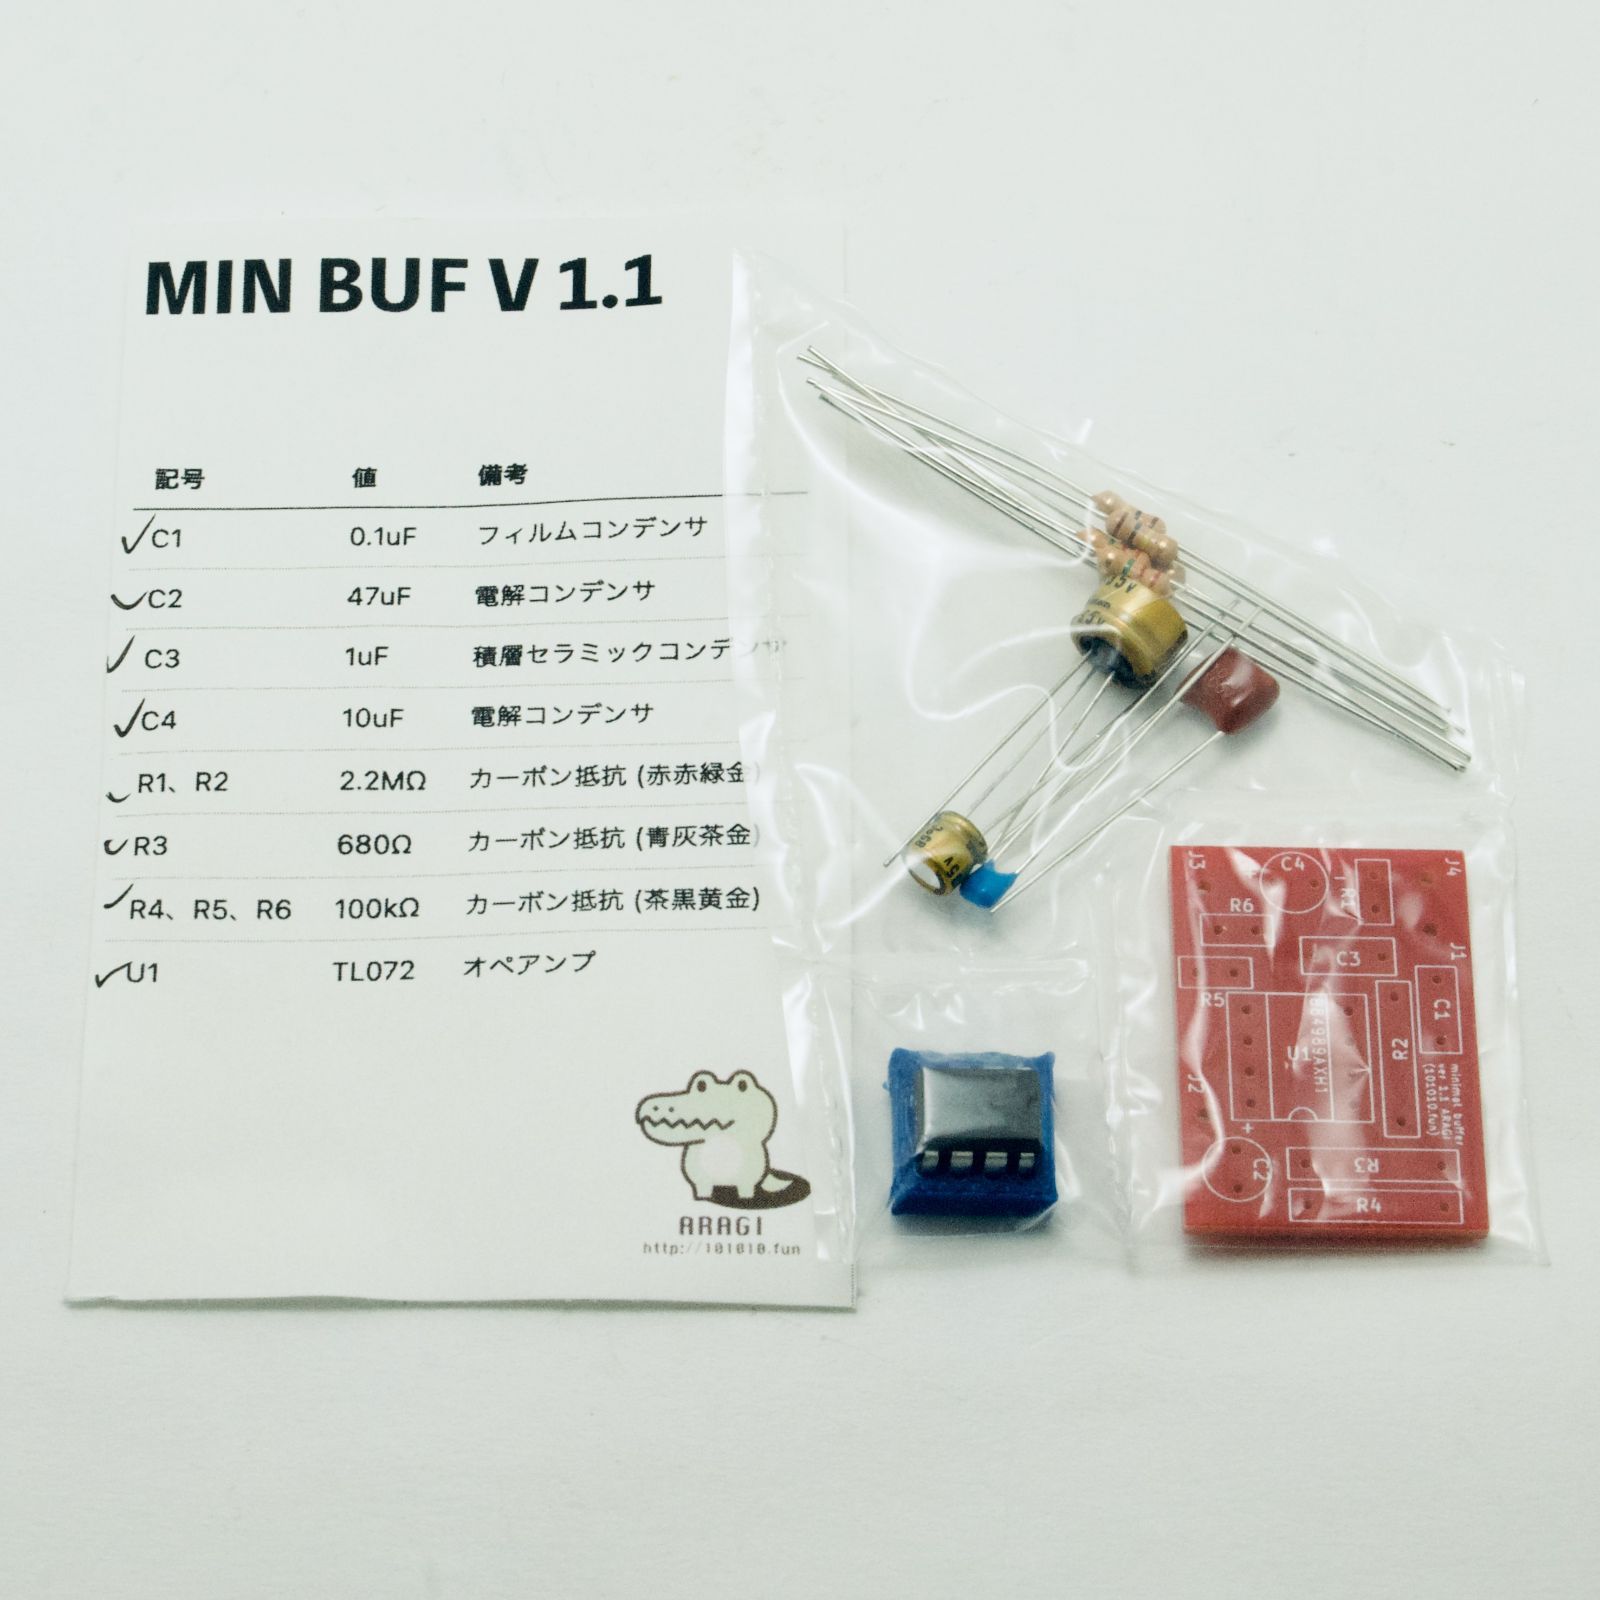 ミニマルバッファーキット MIN BUF V1.1 〜小型サイズの自作